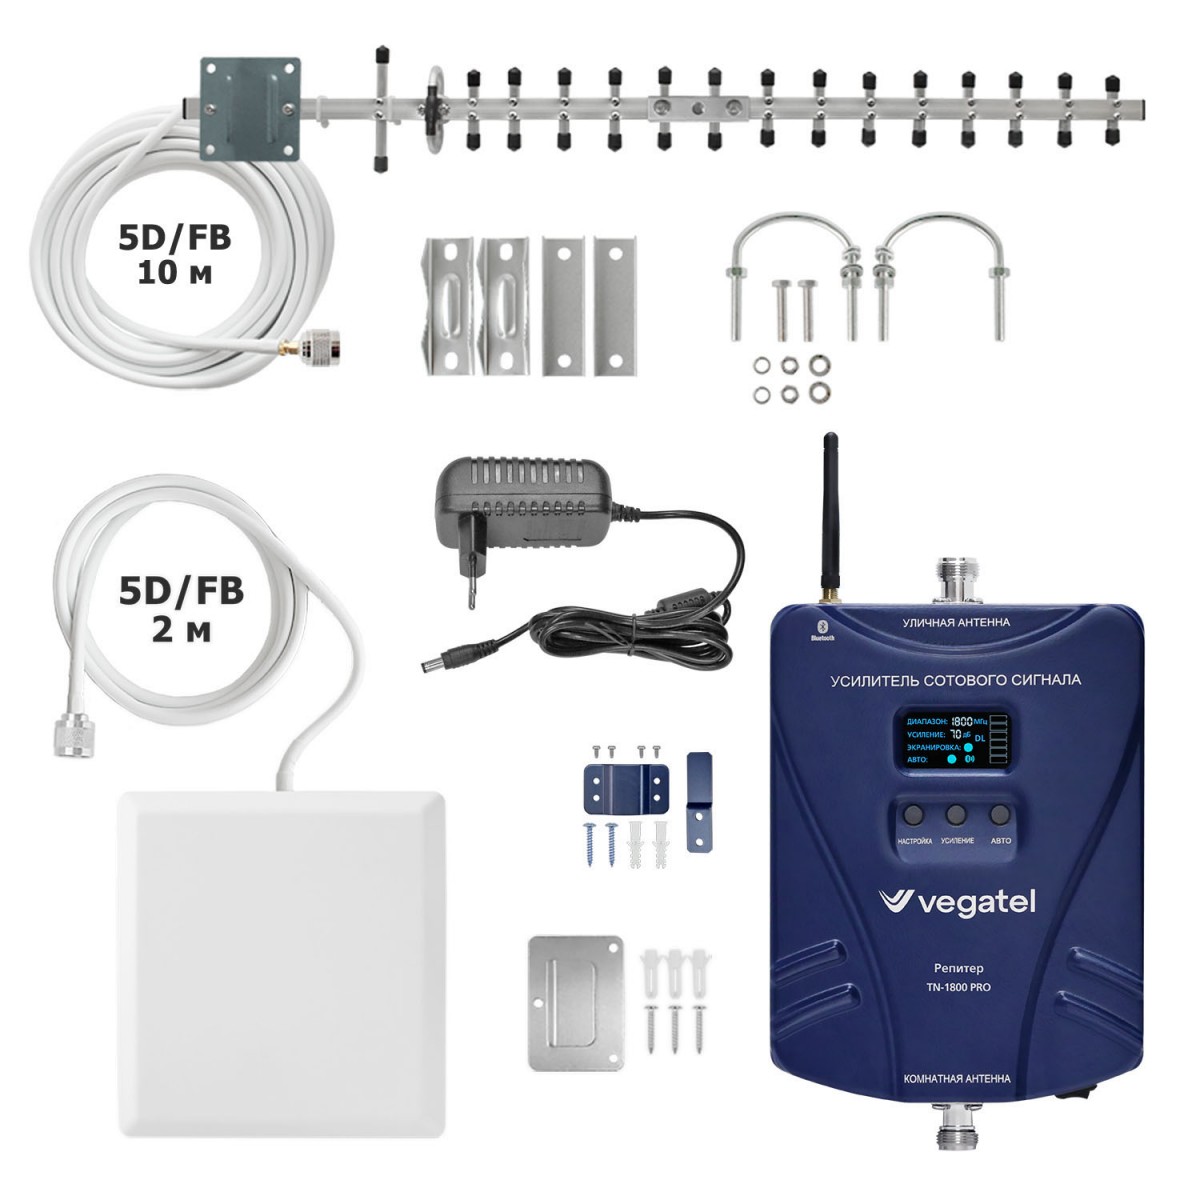 Детальное изображение товара "Комплект усиления сотовой связи Vegatel TN-1800 PRO (14Y)" из каталога оборудования Антенна76